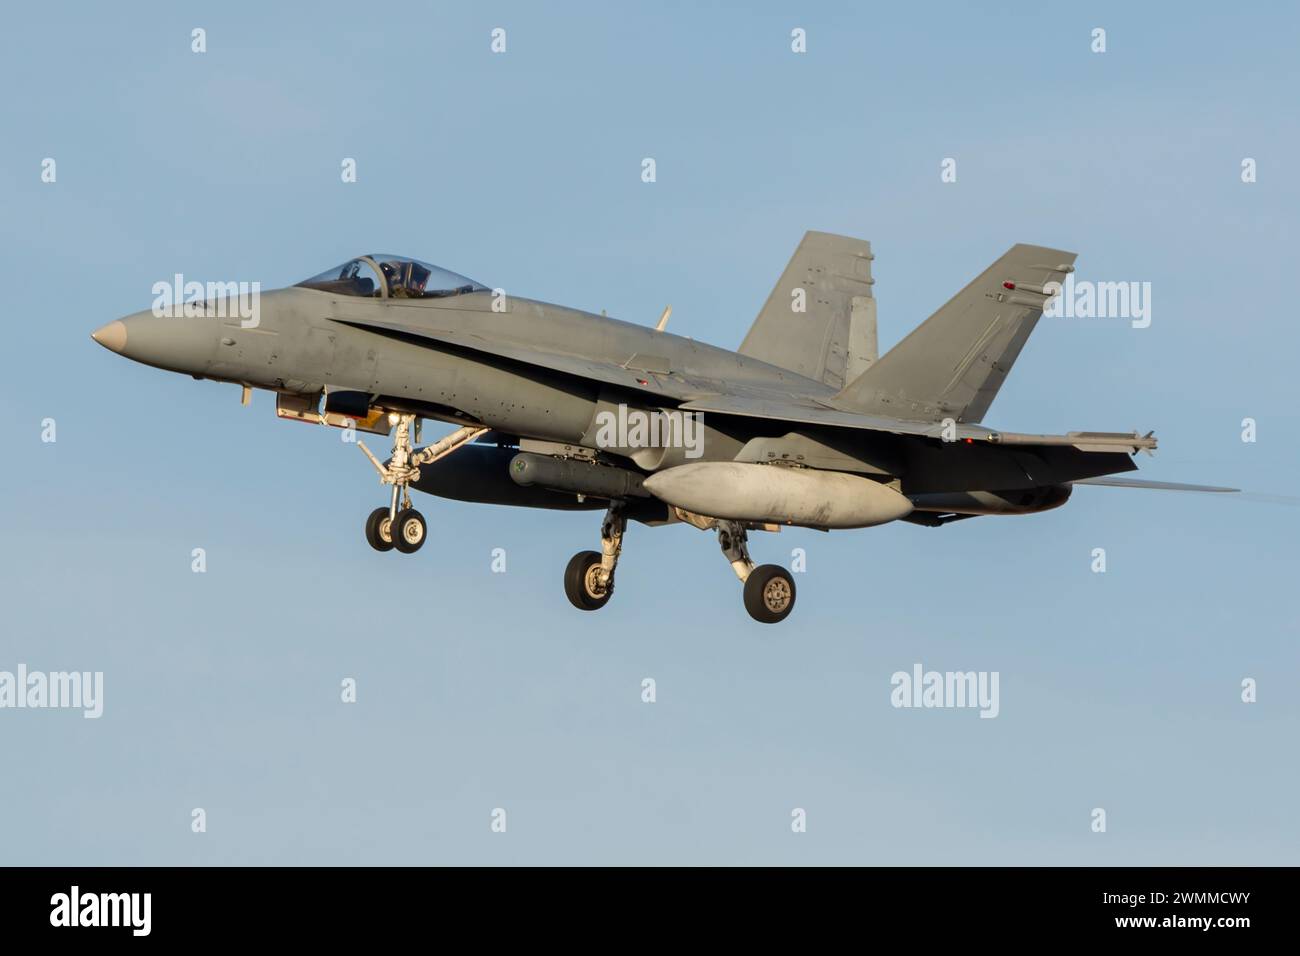 Avion de chasse F-18 Hornet atterrissant au coucher du soleil Banque D'Images